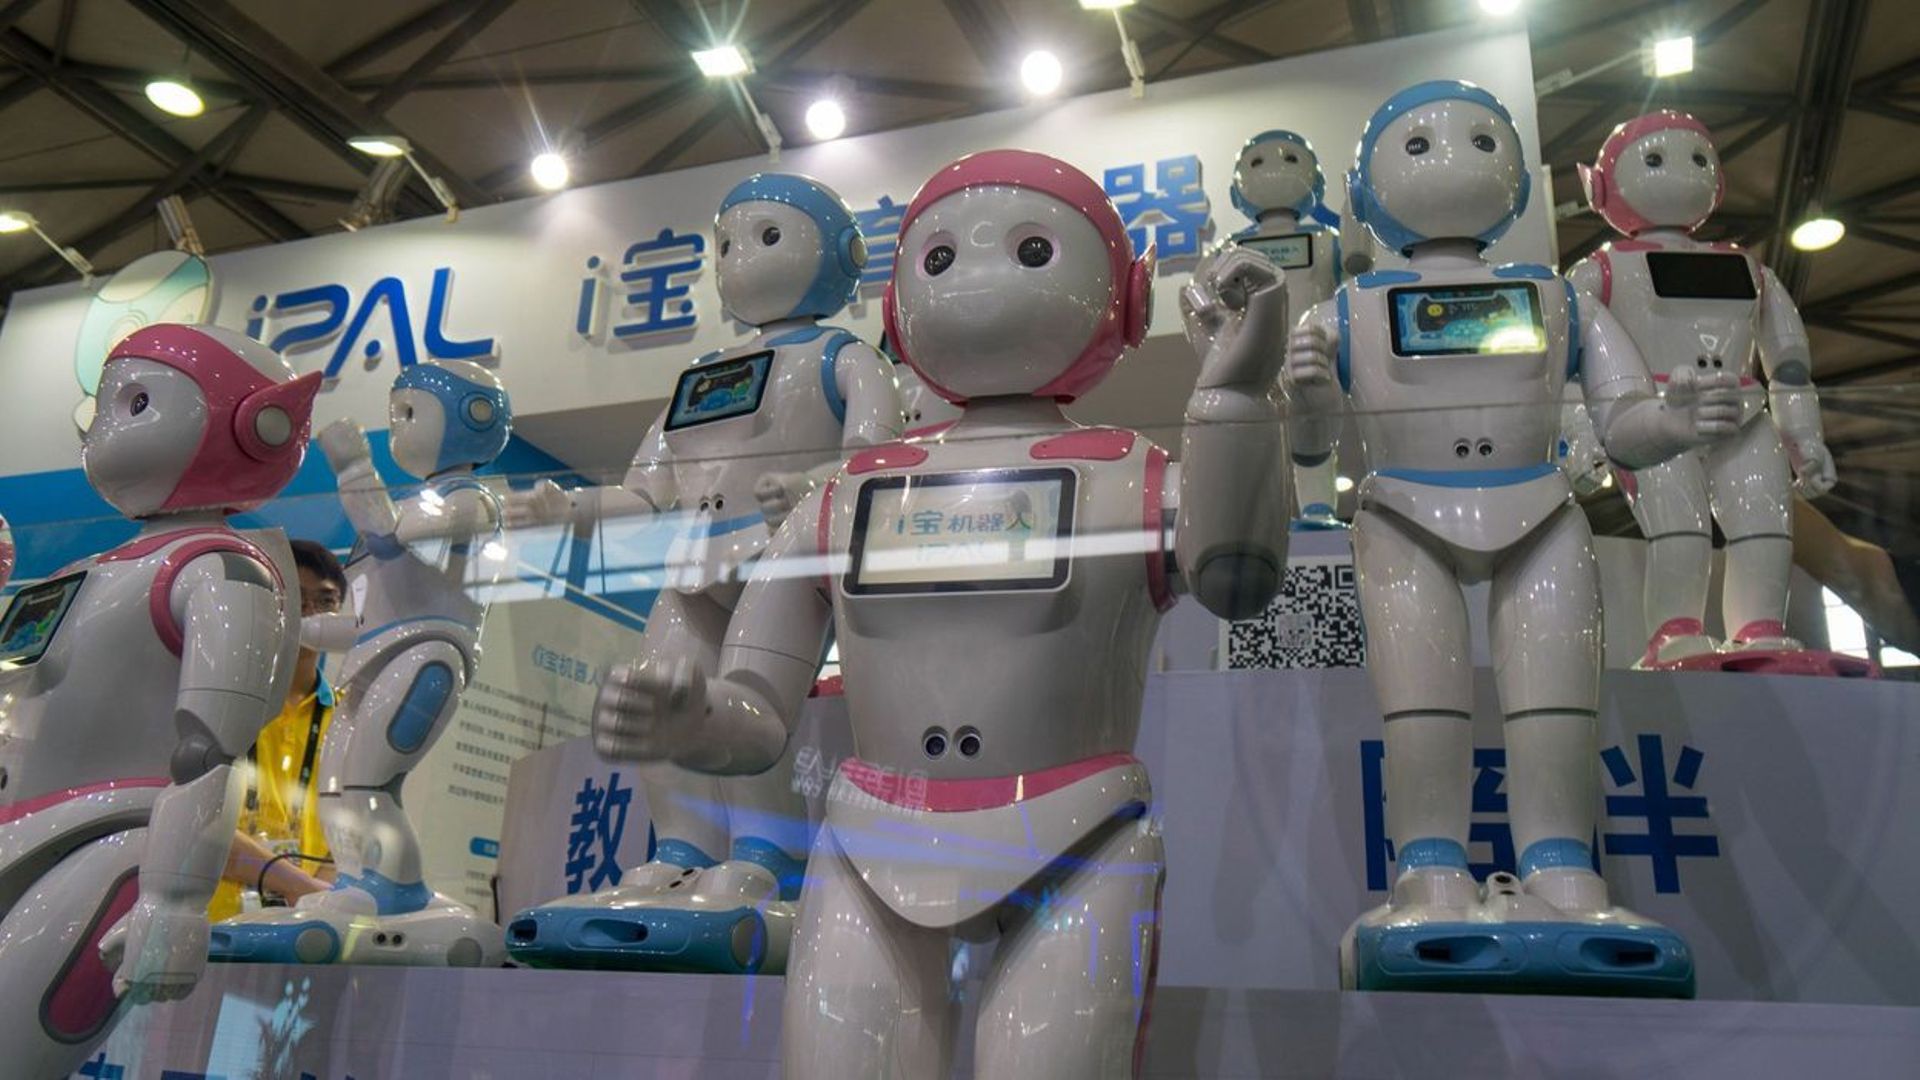 Au Cebit: le robot qui parle chinois et le réveil volant 